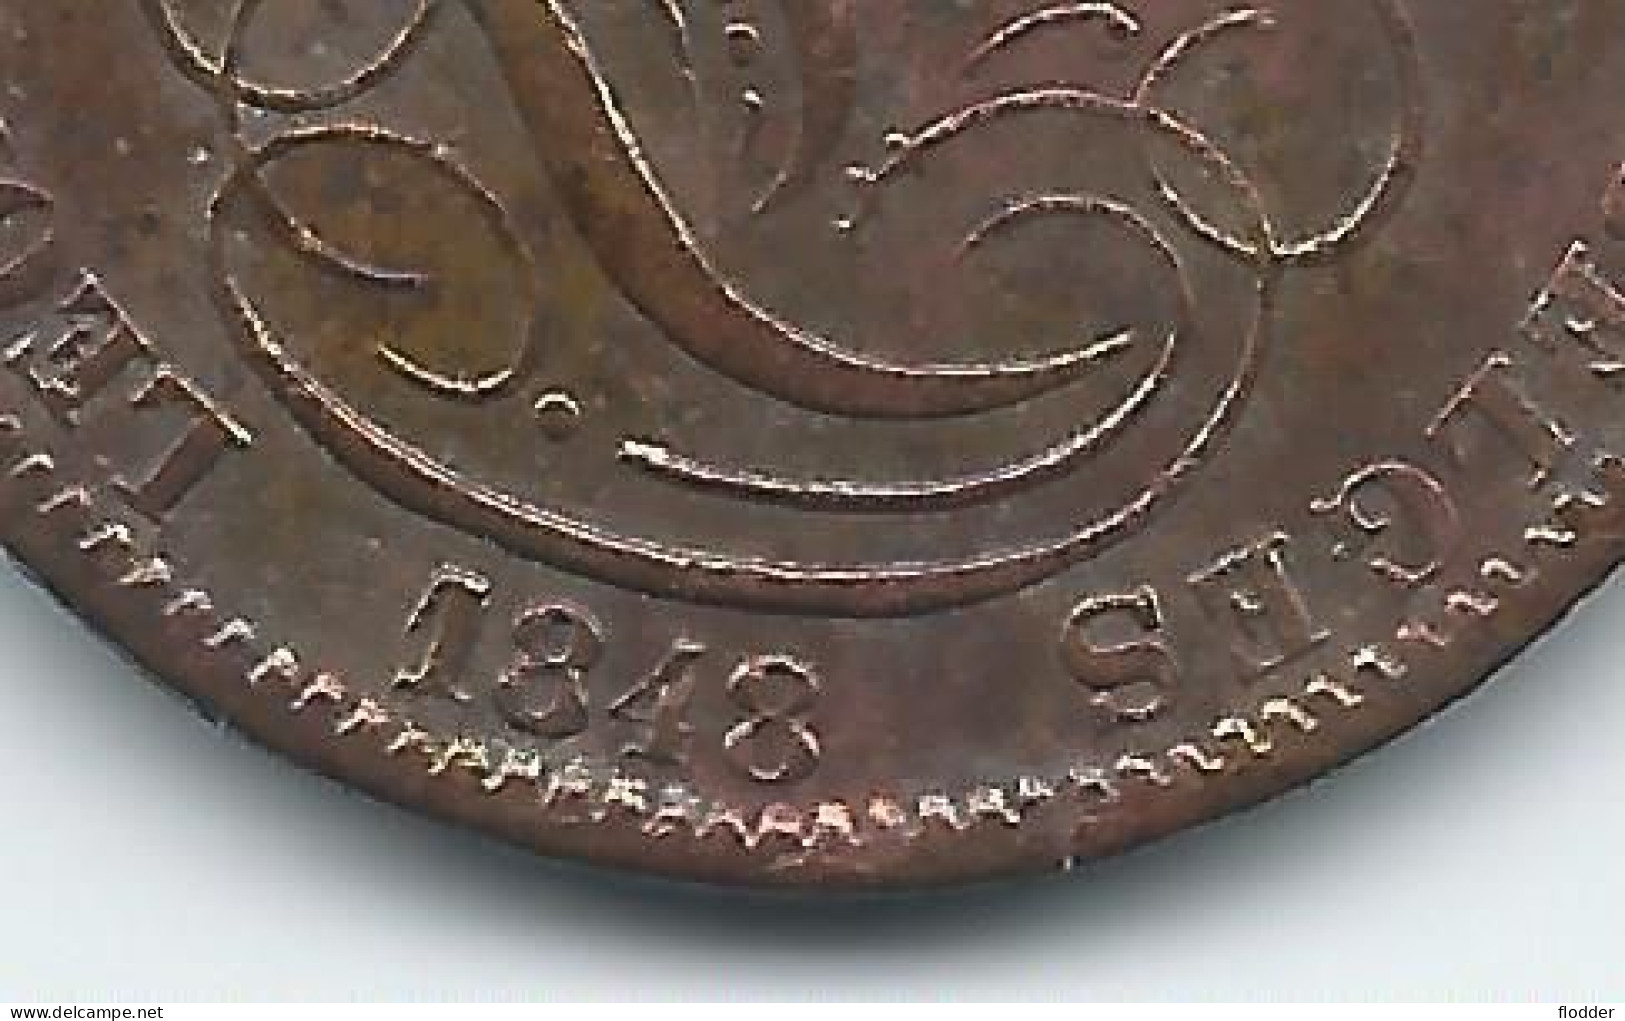 5 Centimes 1848 , Dubbele 1 In Jaartal - 5 Cents